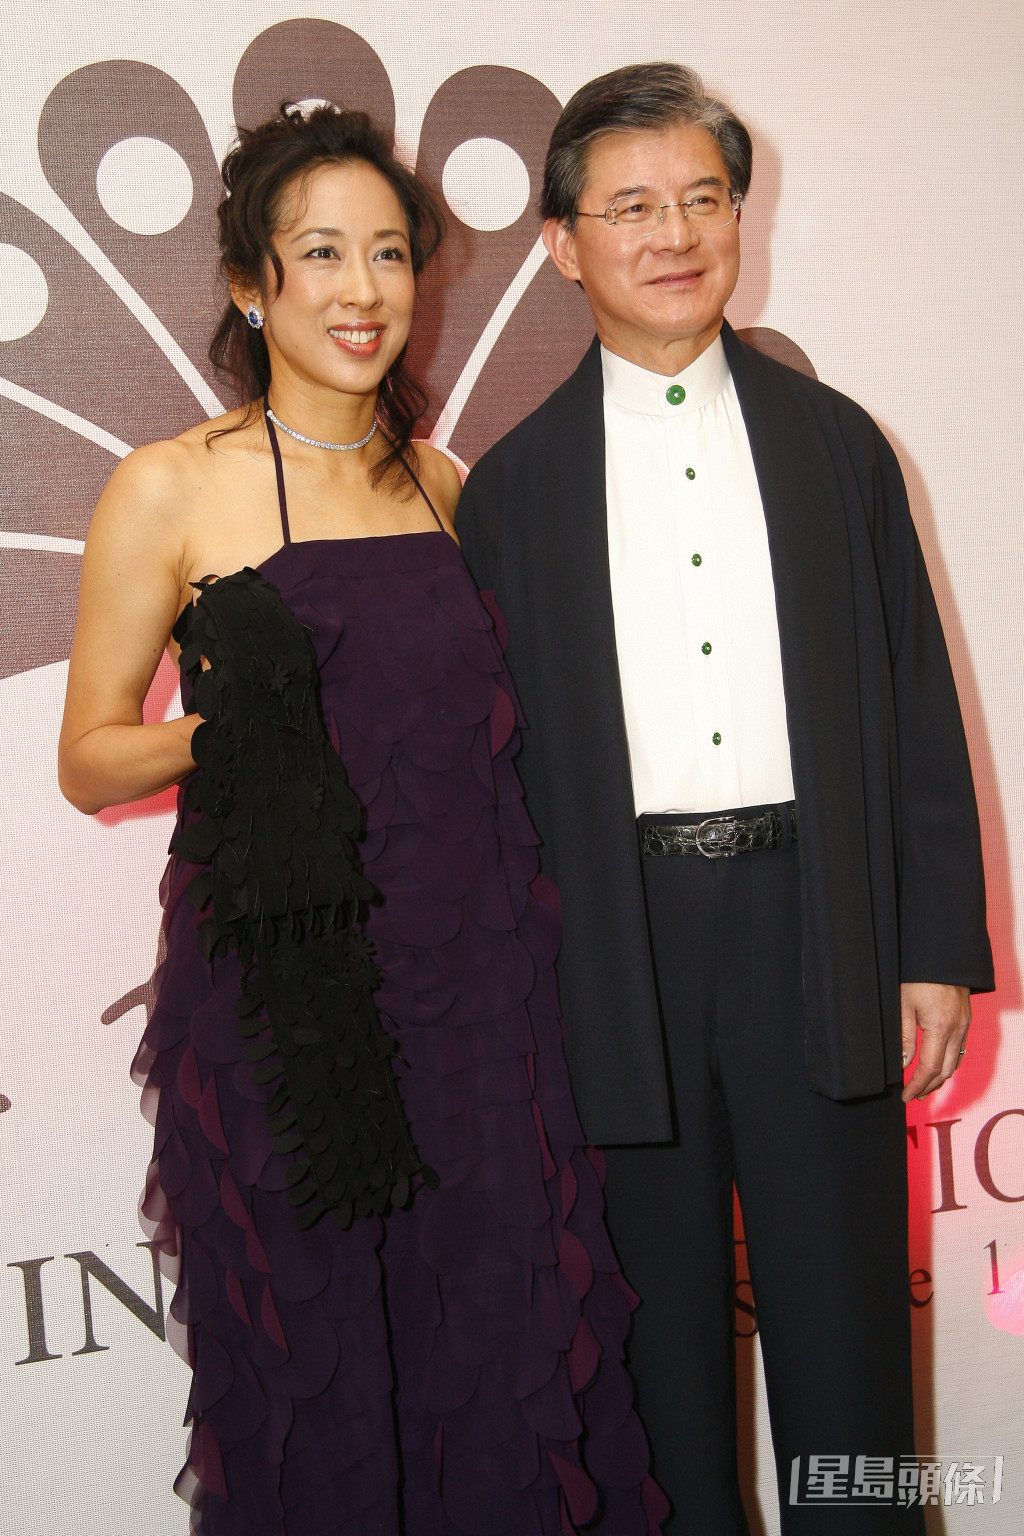 朱玲玲現任丈夫羅康瑞，為瑞安集團董事長。